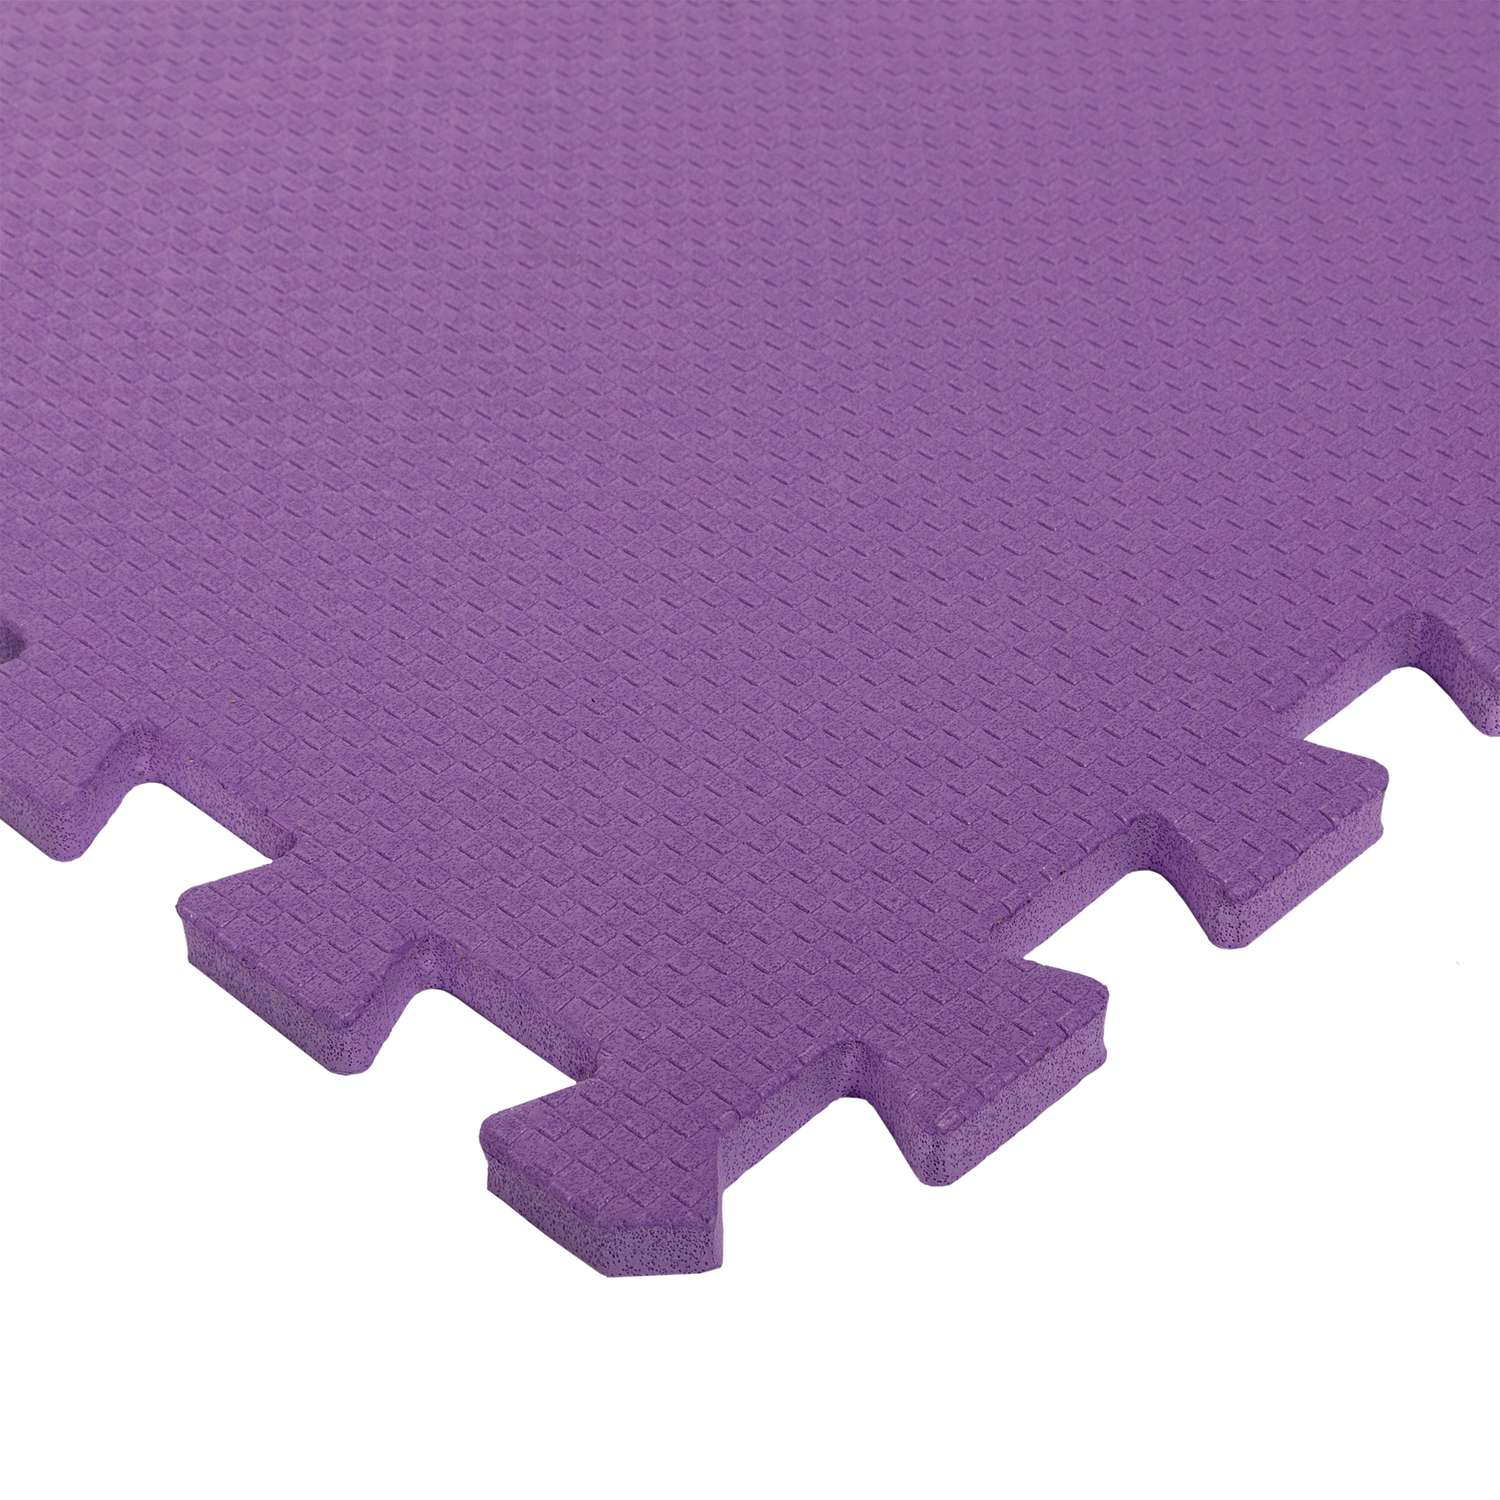 Развивающий детский коврик Eco cover игровой мягкий пол для ползания фиолетовый 60х60 - фото 2